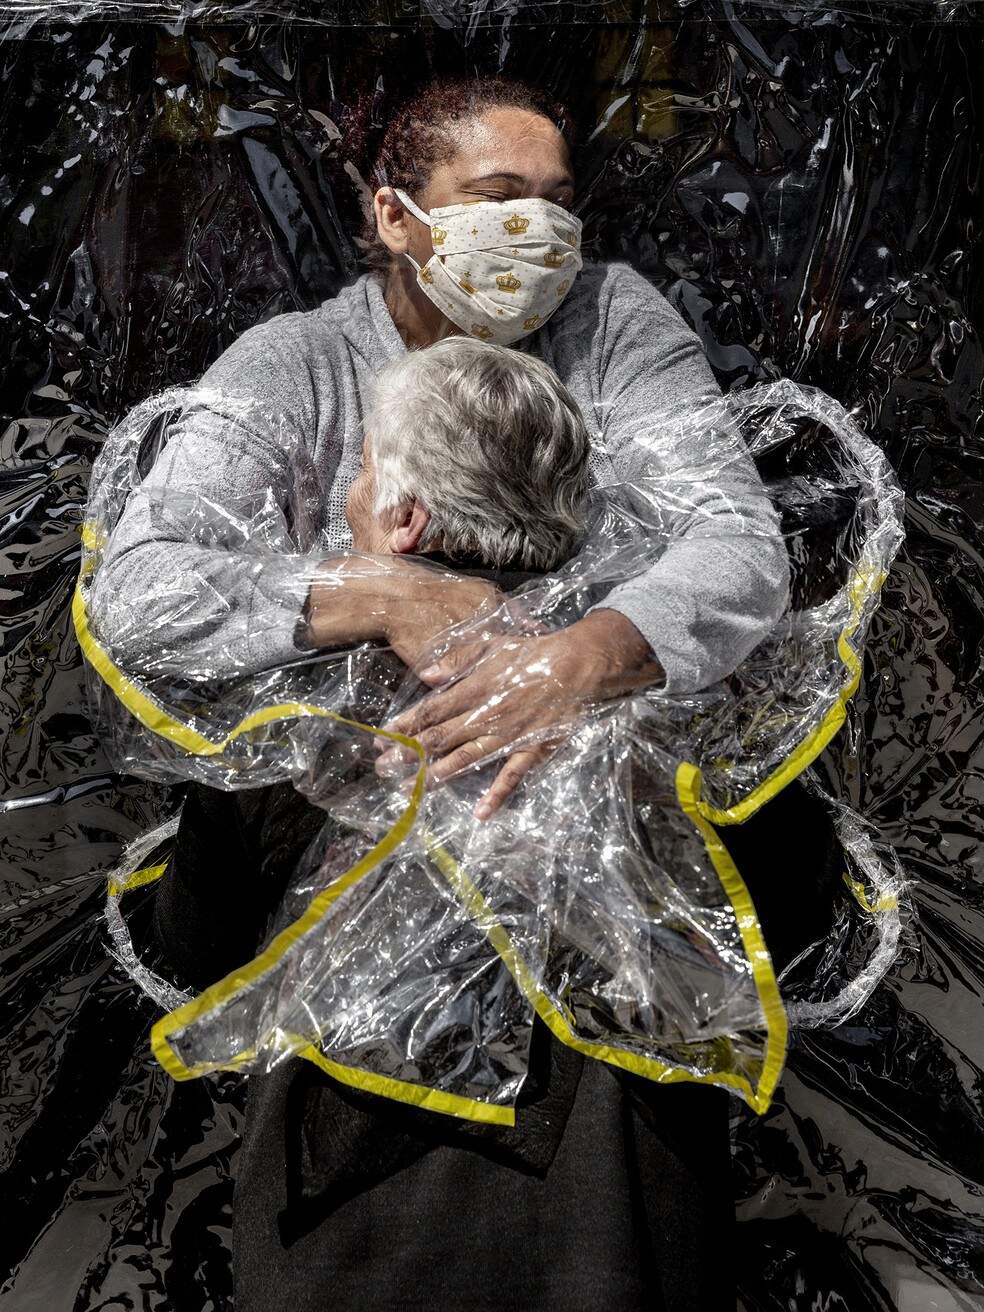 Foto de abraço entre idosa e cuidadora durante a pandemia de Covid-19 vence World Press Photo  